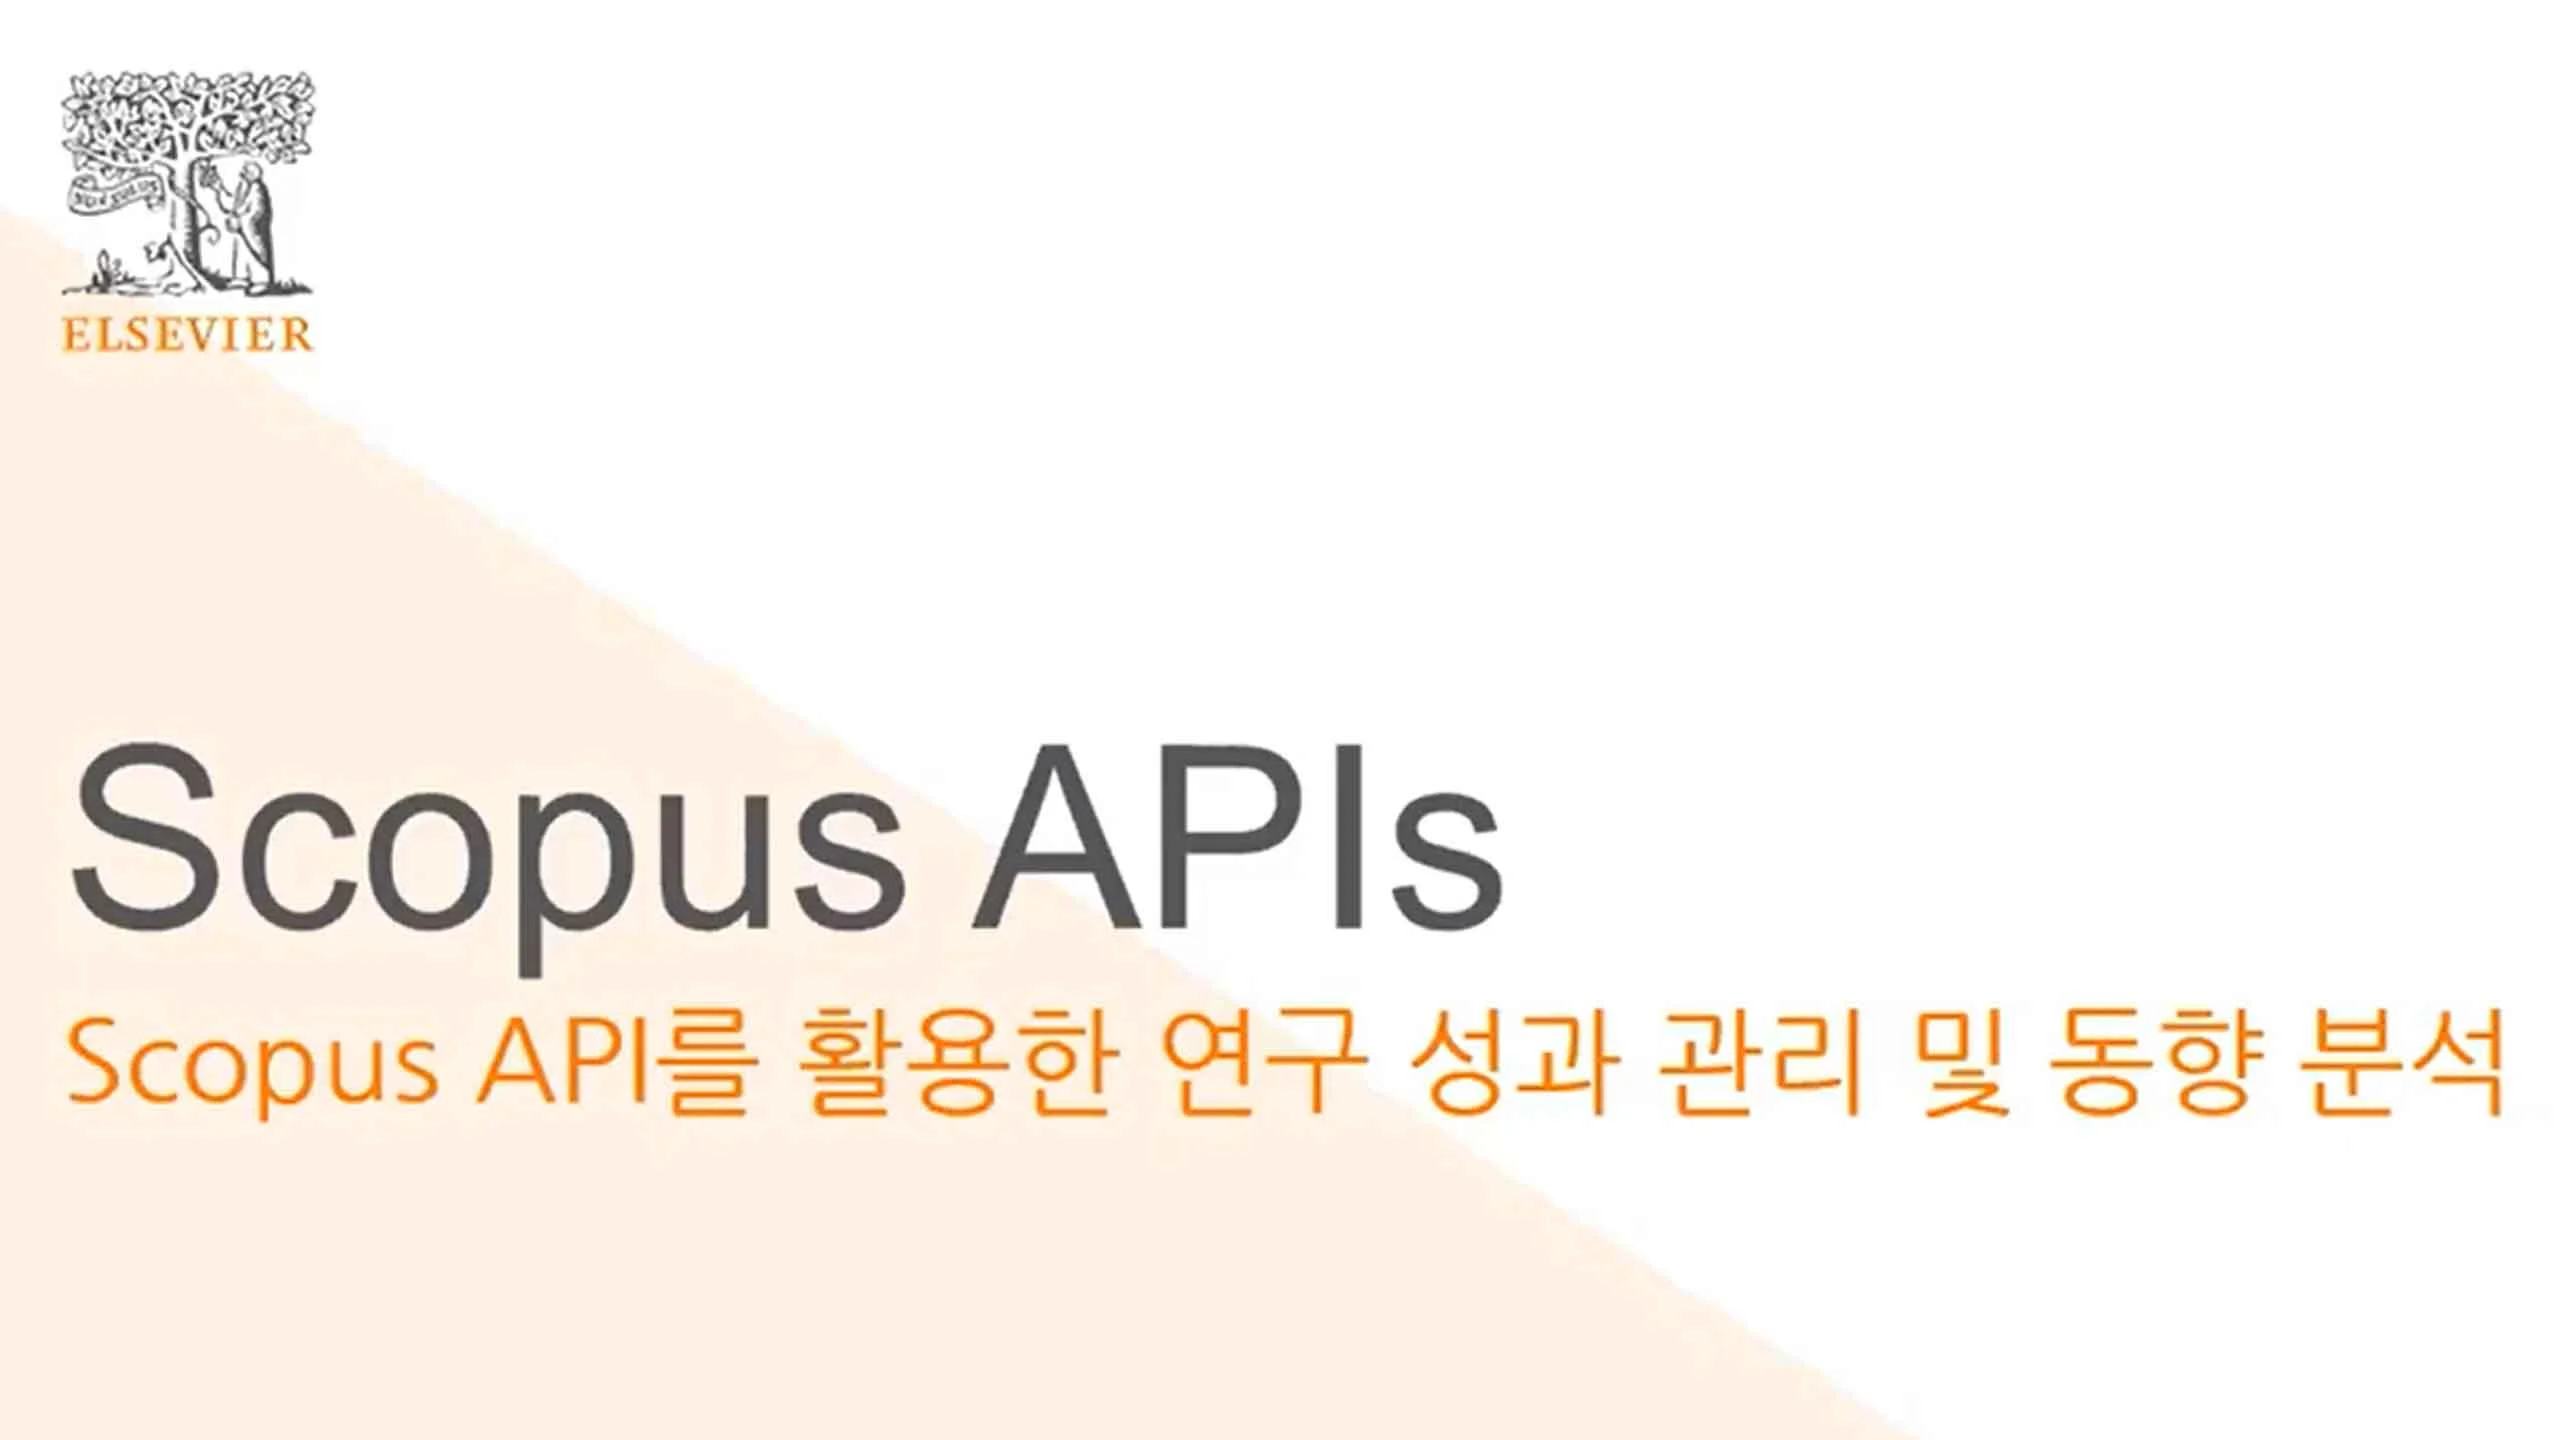 Scopus APIs Korean Video 